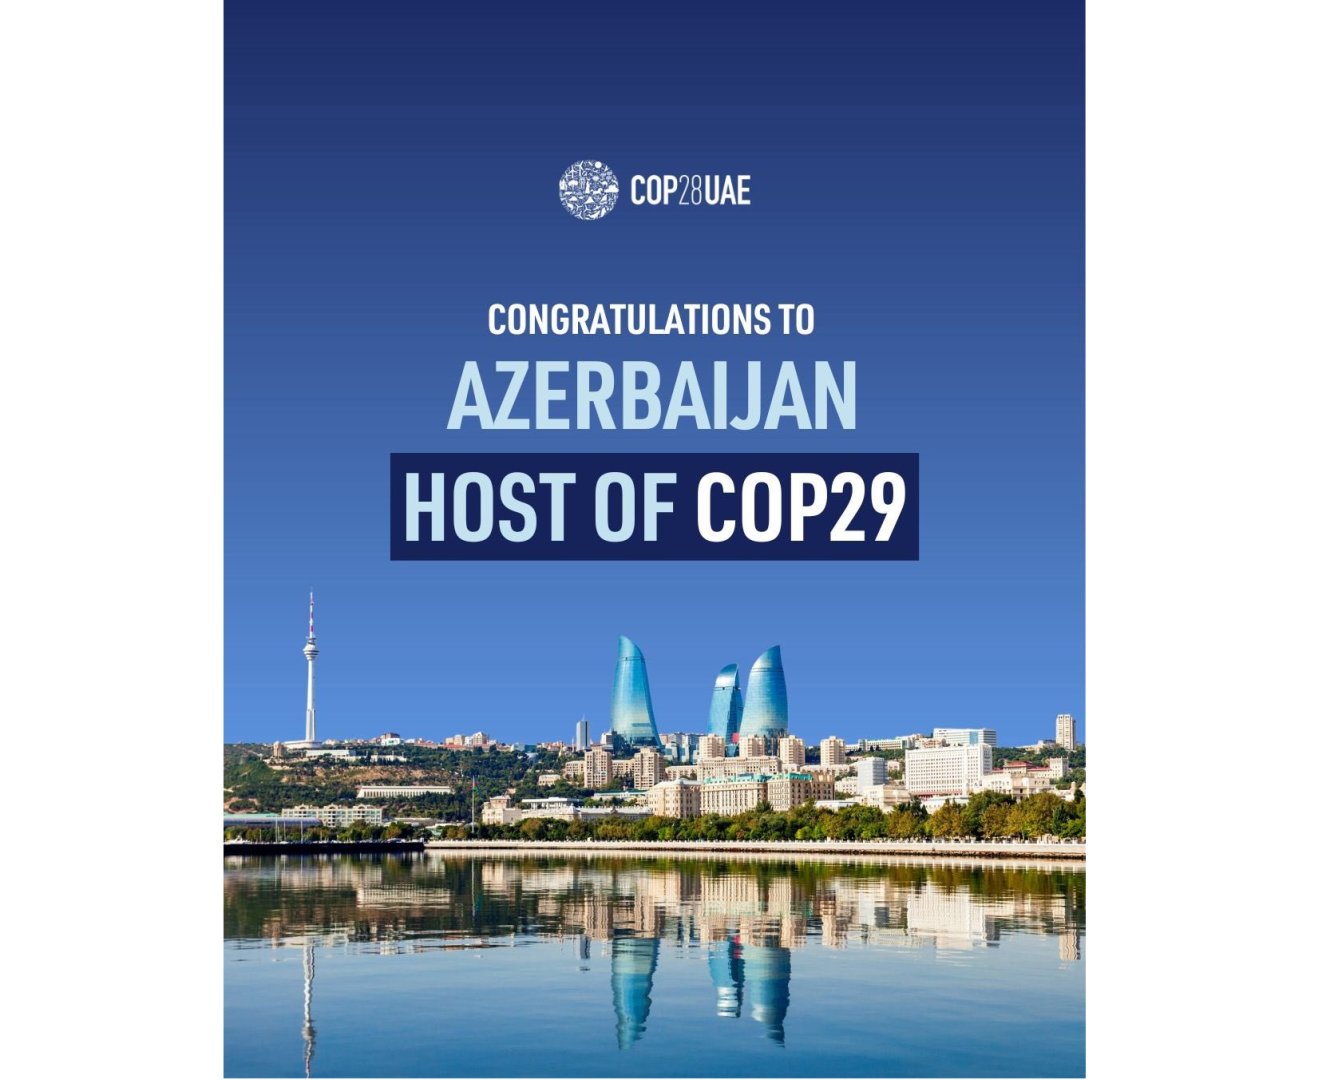 Председательство COP28 поздравило Азербайджан с избранием для проведения COP29